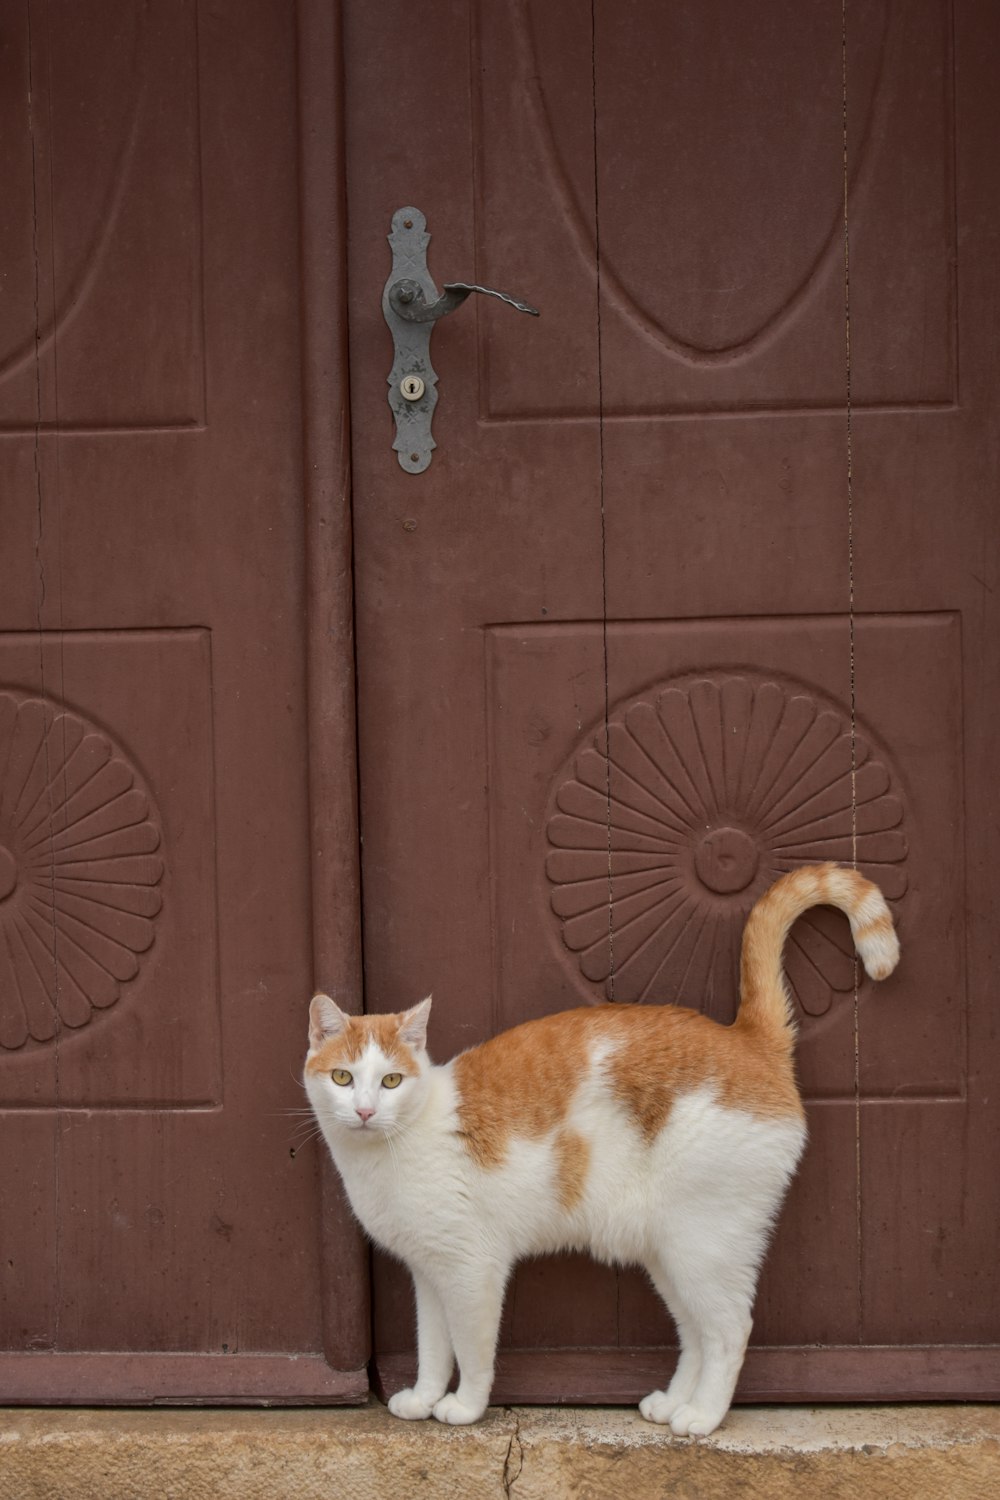 a cat standing in front of a door